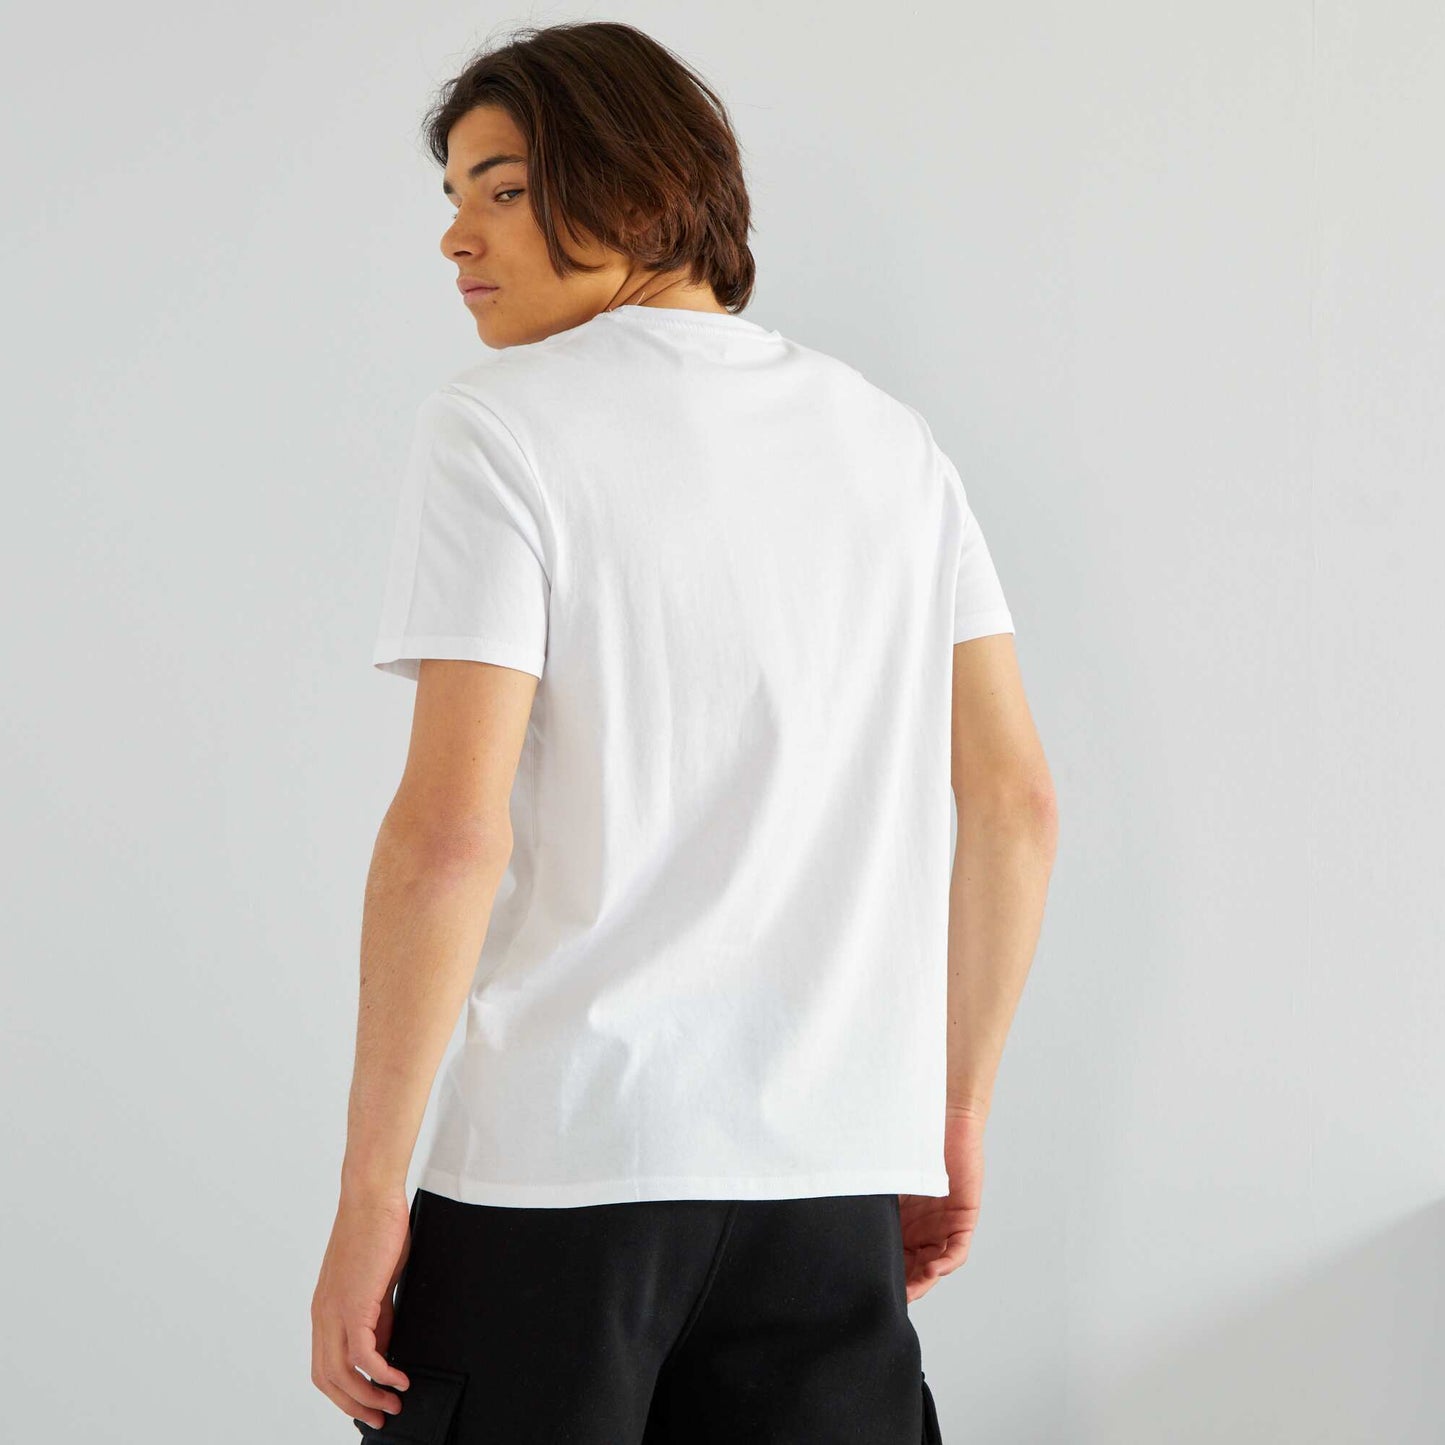 T*-shirt manches courtes avec poches poitrine blanc